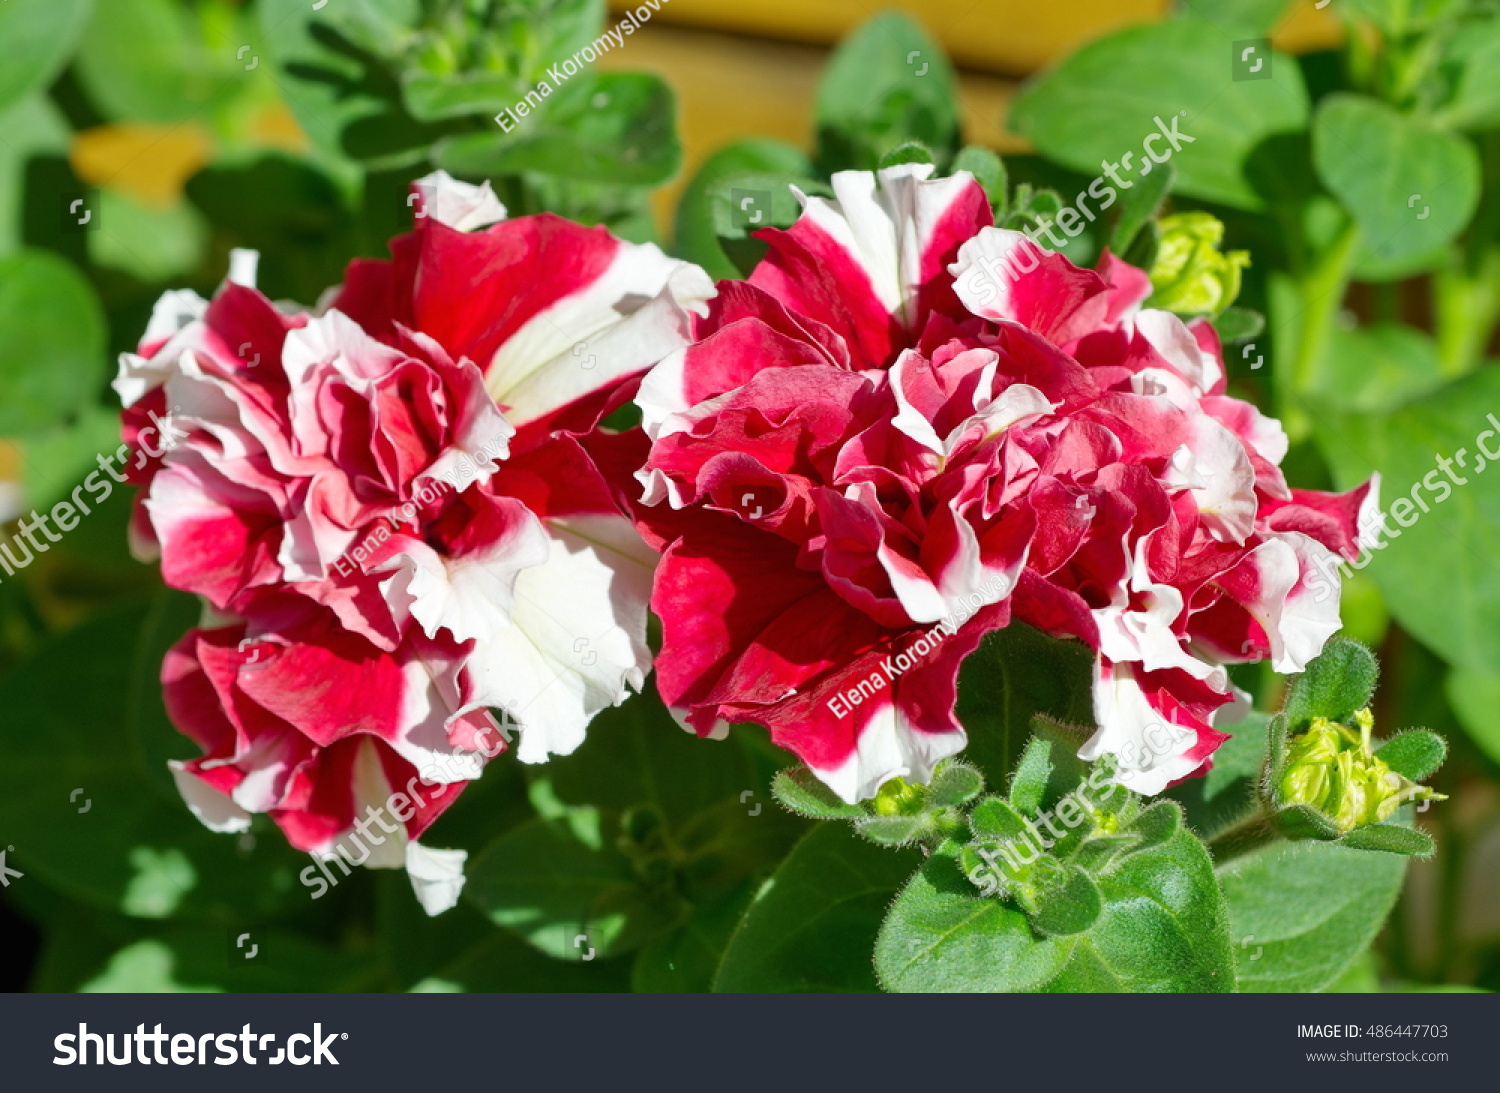 Red-white Petunia close-up #486447703